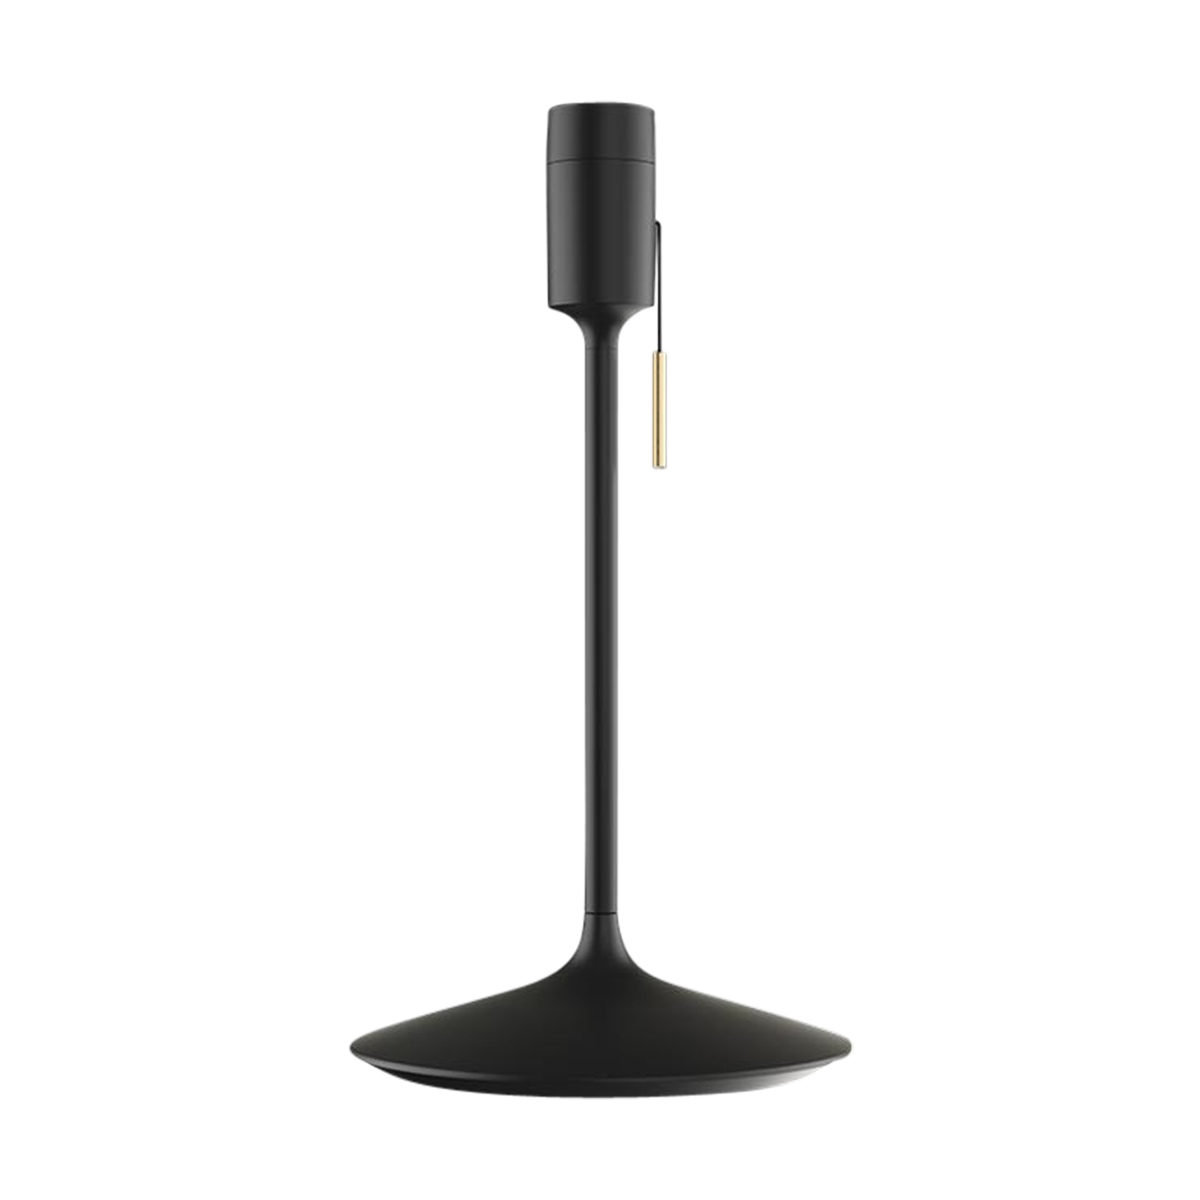 Sante tafellamp standaard black - met usb aansluiting